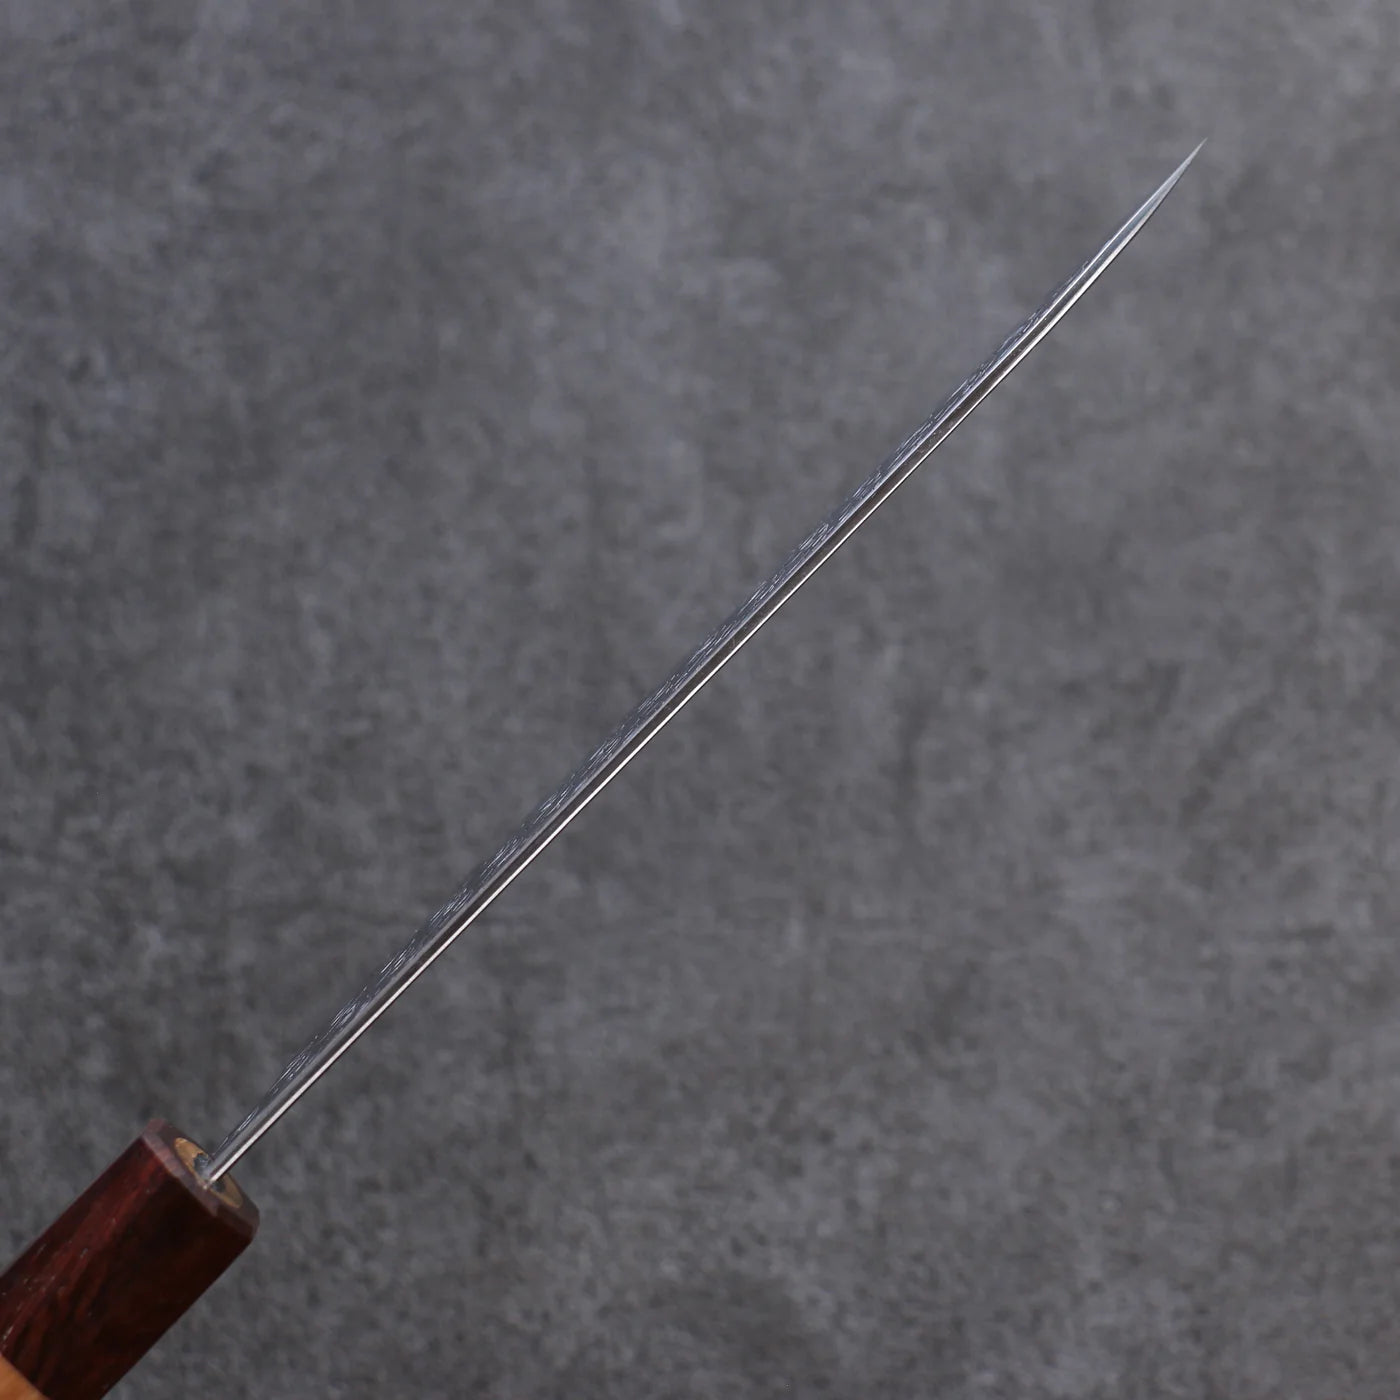 Yoshimi Kato Marke Wasseroberfläche R2/SG2 handgeschmiedetes Messer Santoku-Mehrzweckmesser Japanisches Messer 165 mm Griff aus Eichenholz